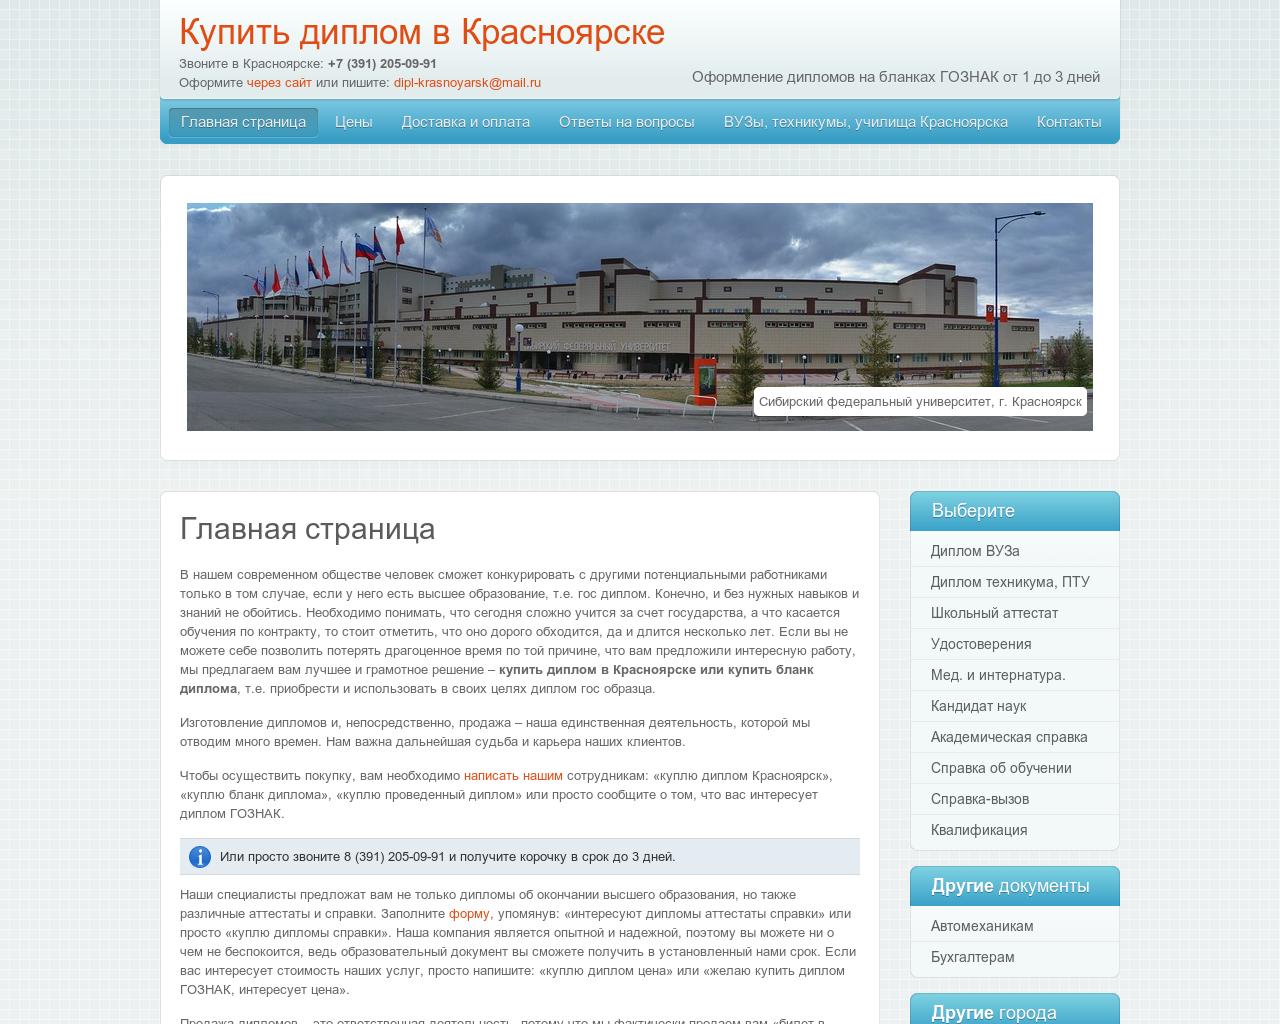 Изображение сайта dipl-krasnoyarsk.ru в разрешении 1280x1024